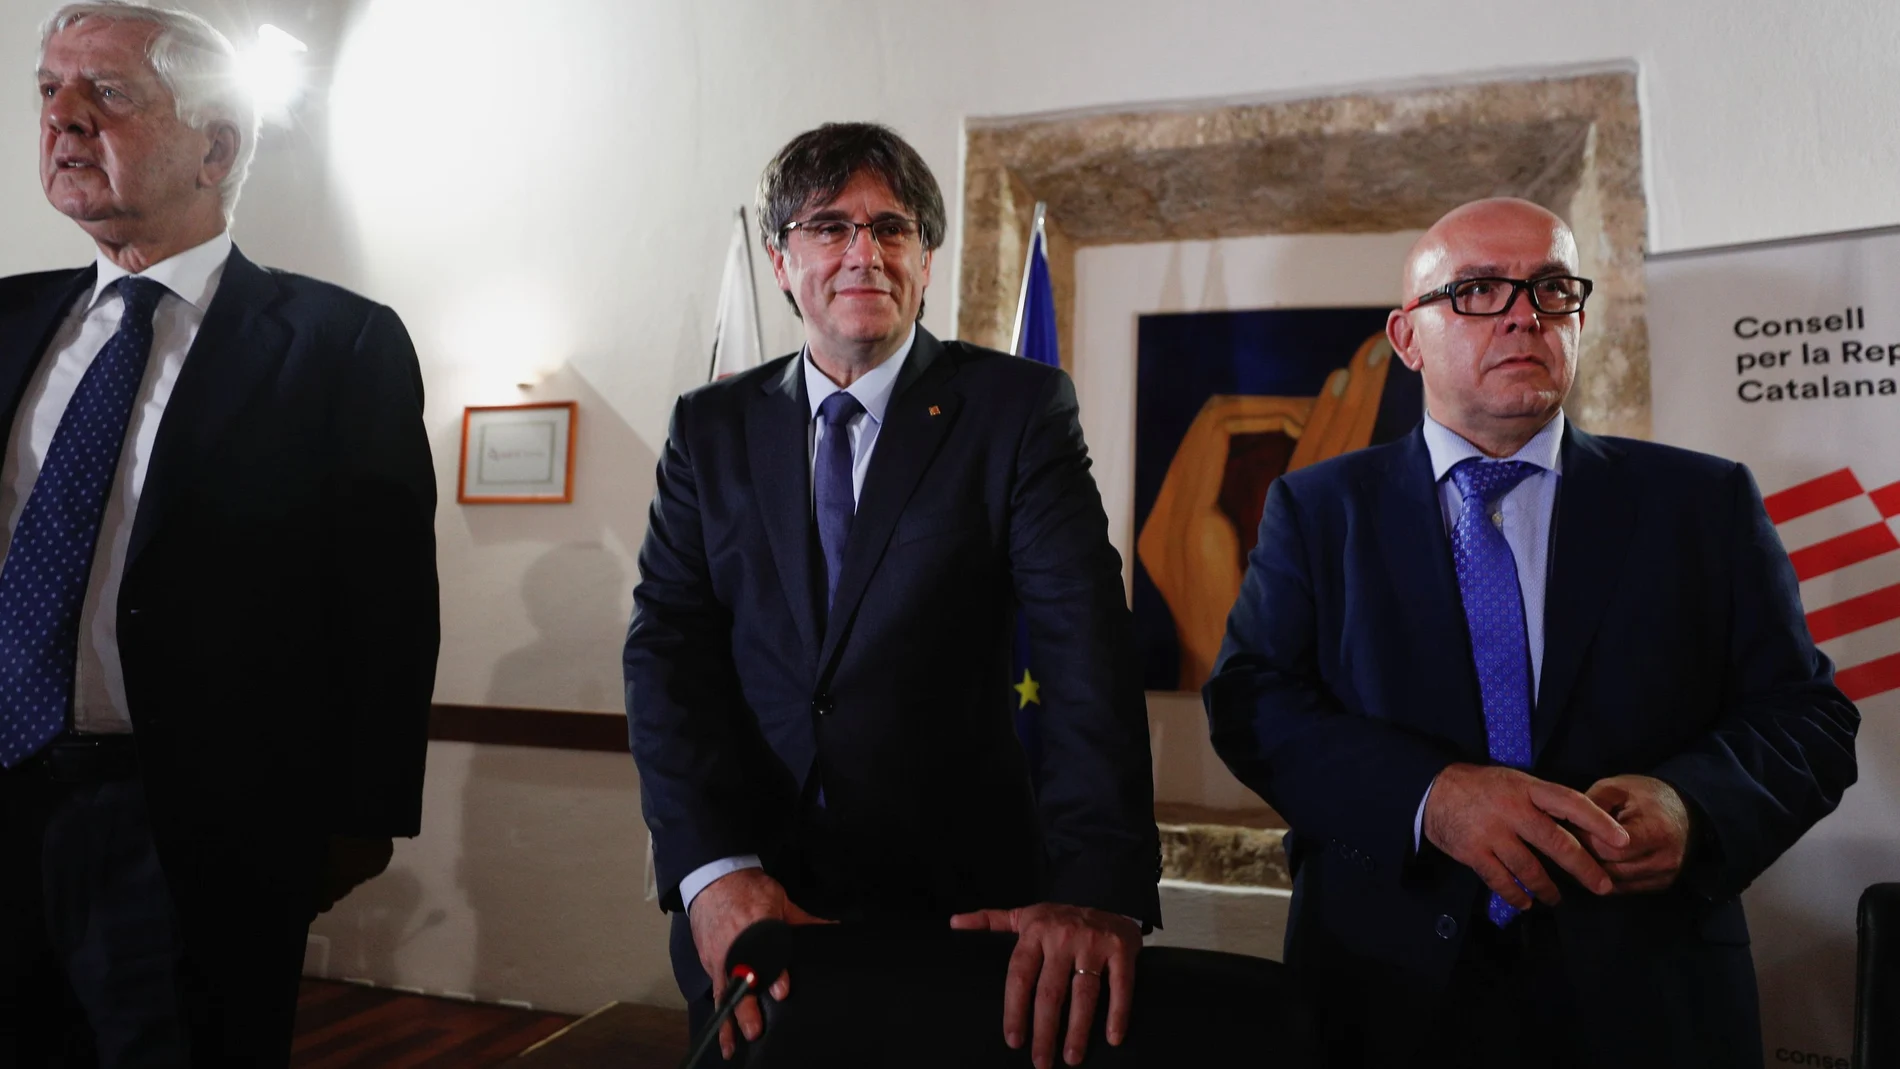 El expresidente Catalán Carles Puigdemont y su abogado Gonzalo Boye